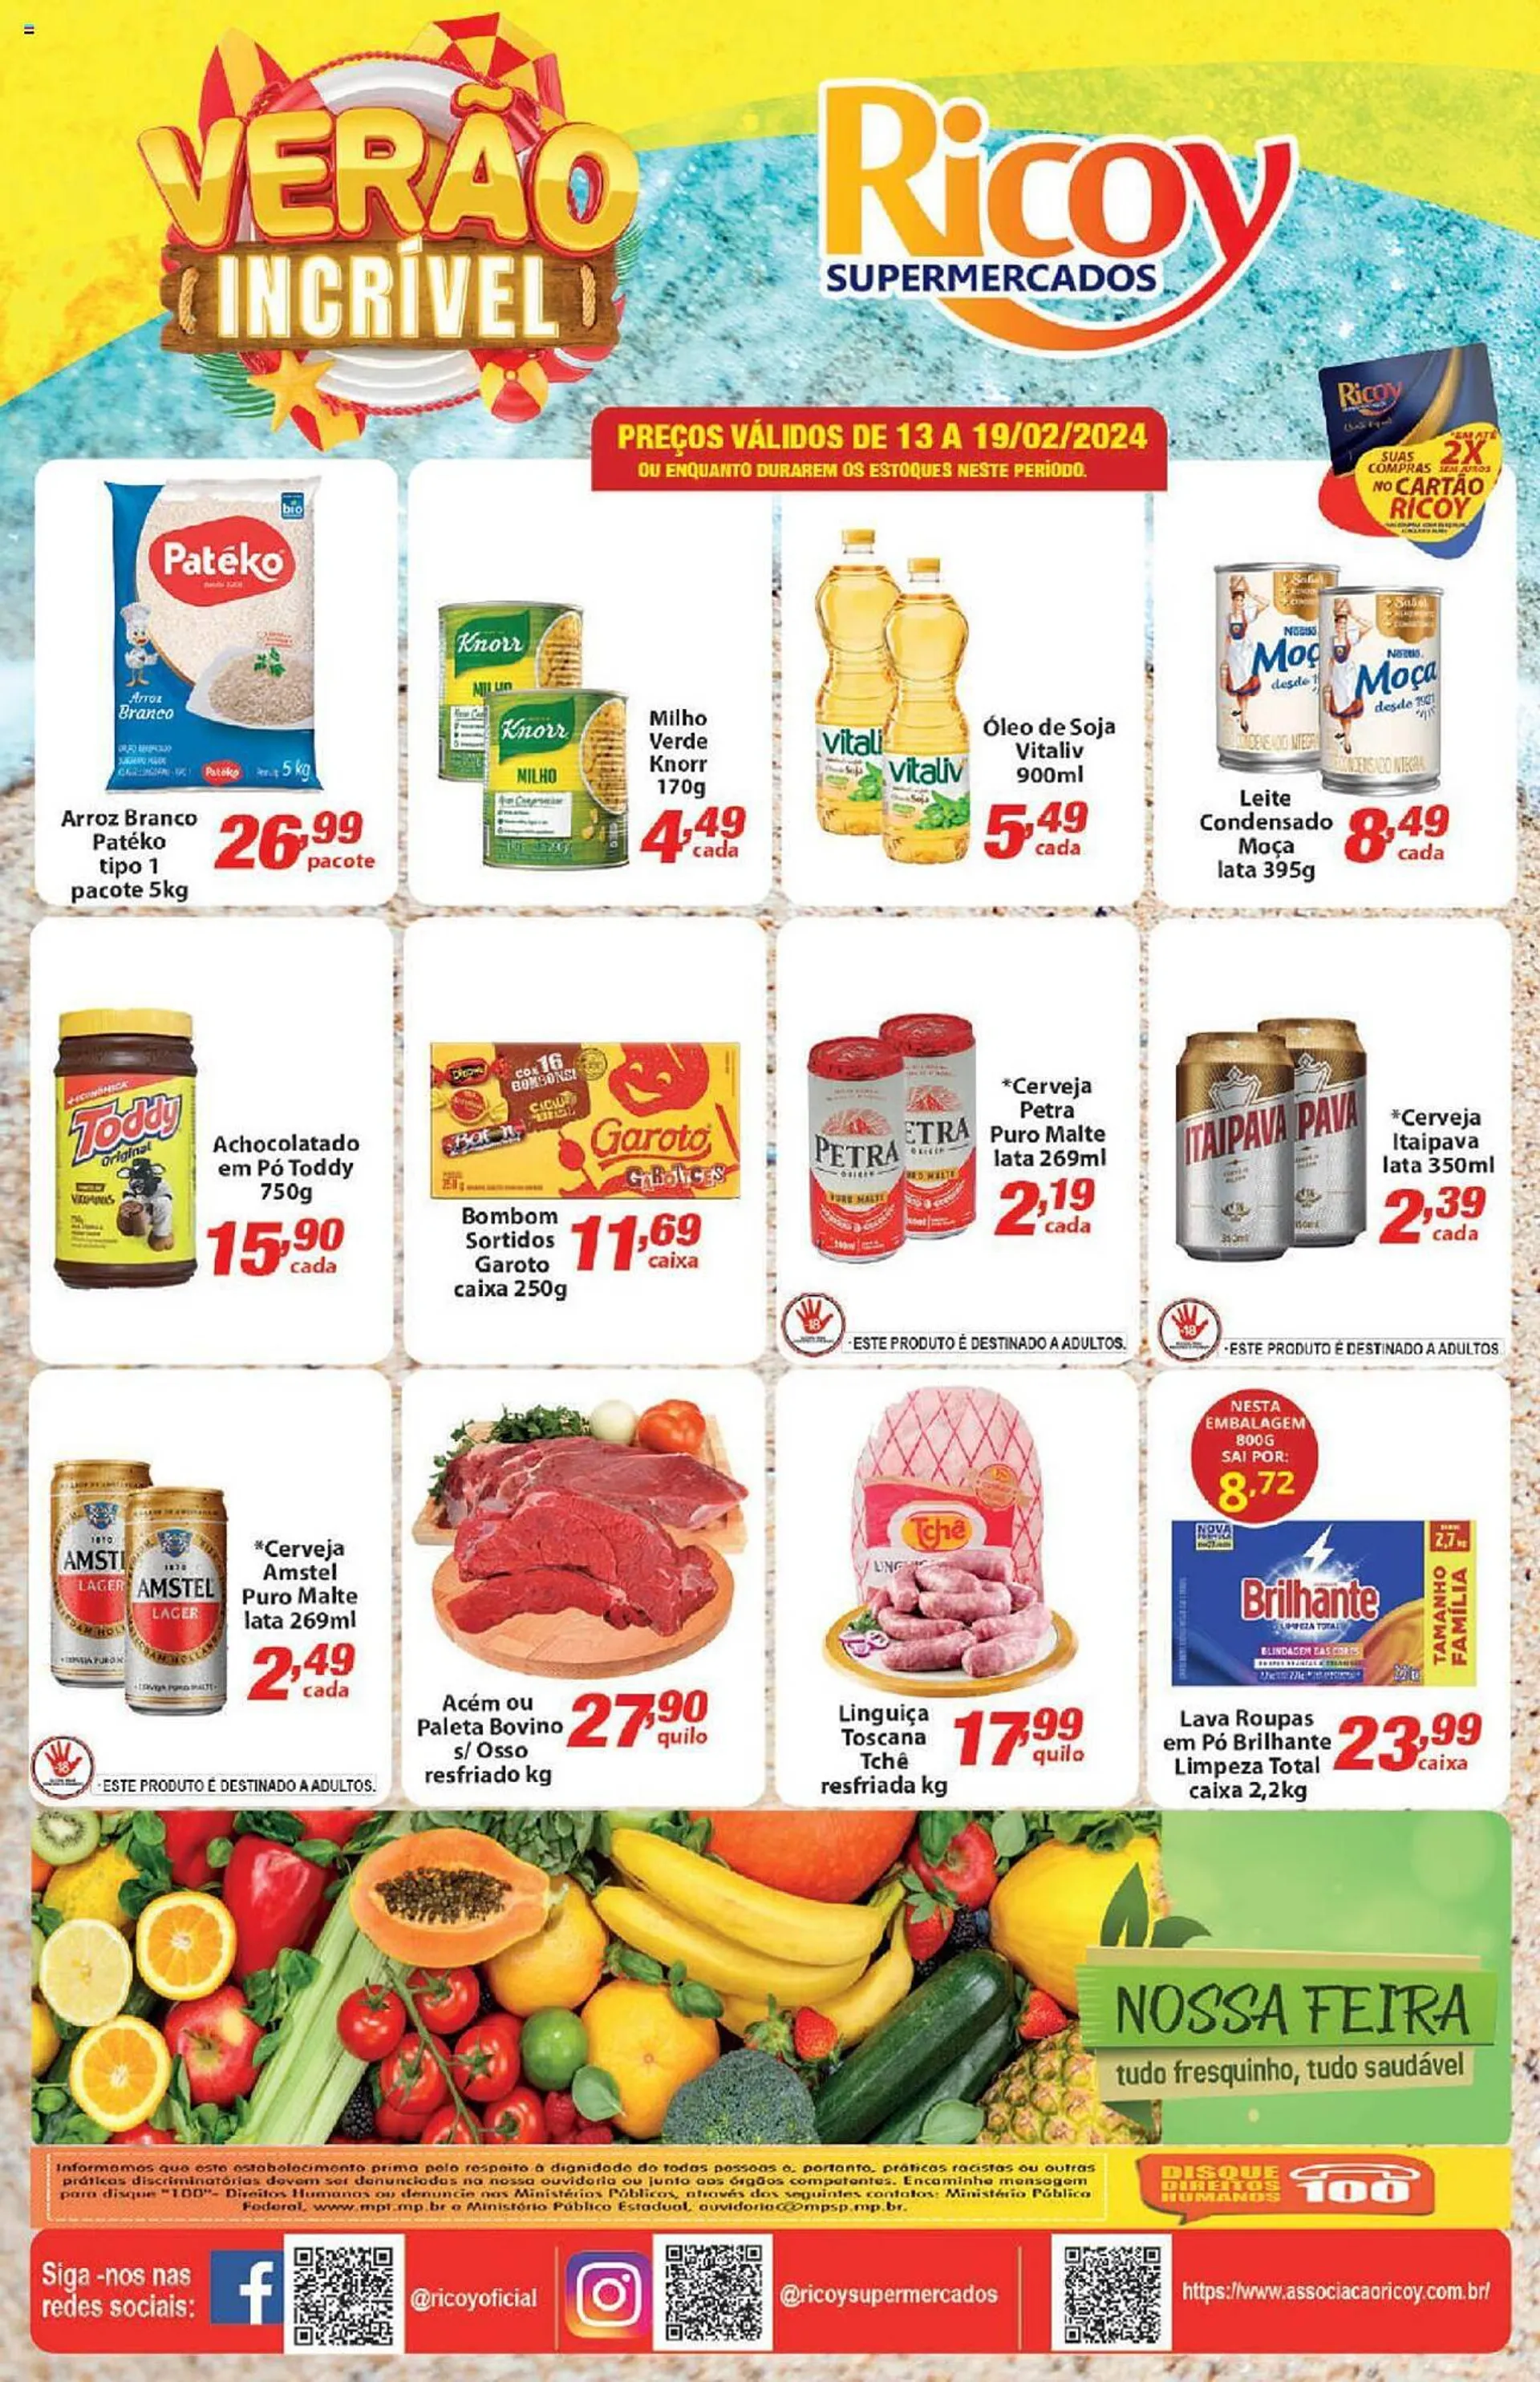 Encarte de Catálogo Ricoy Supermercados 13 de fevereiro até 19 de fevereiro 2024 - Pagina 